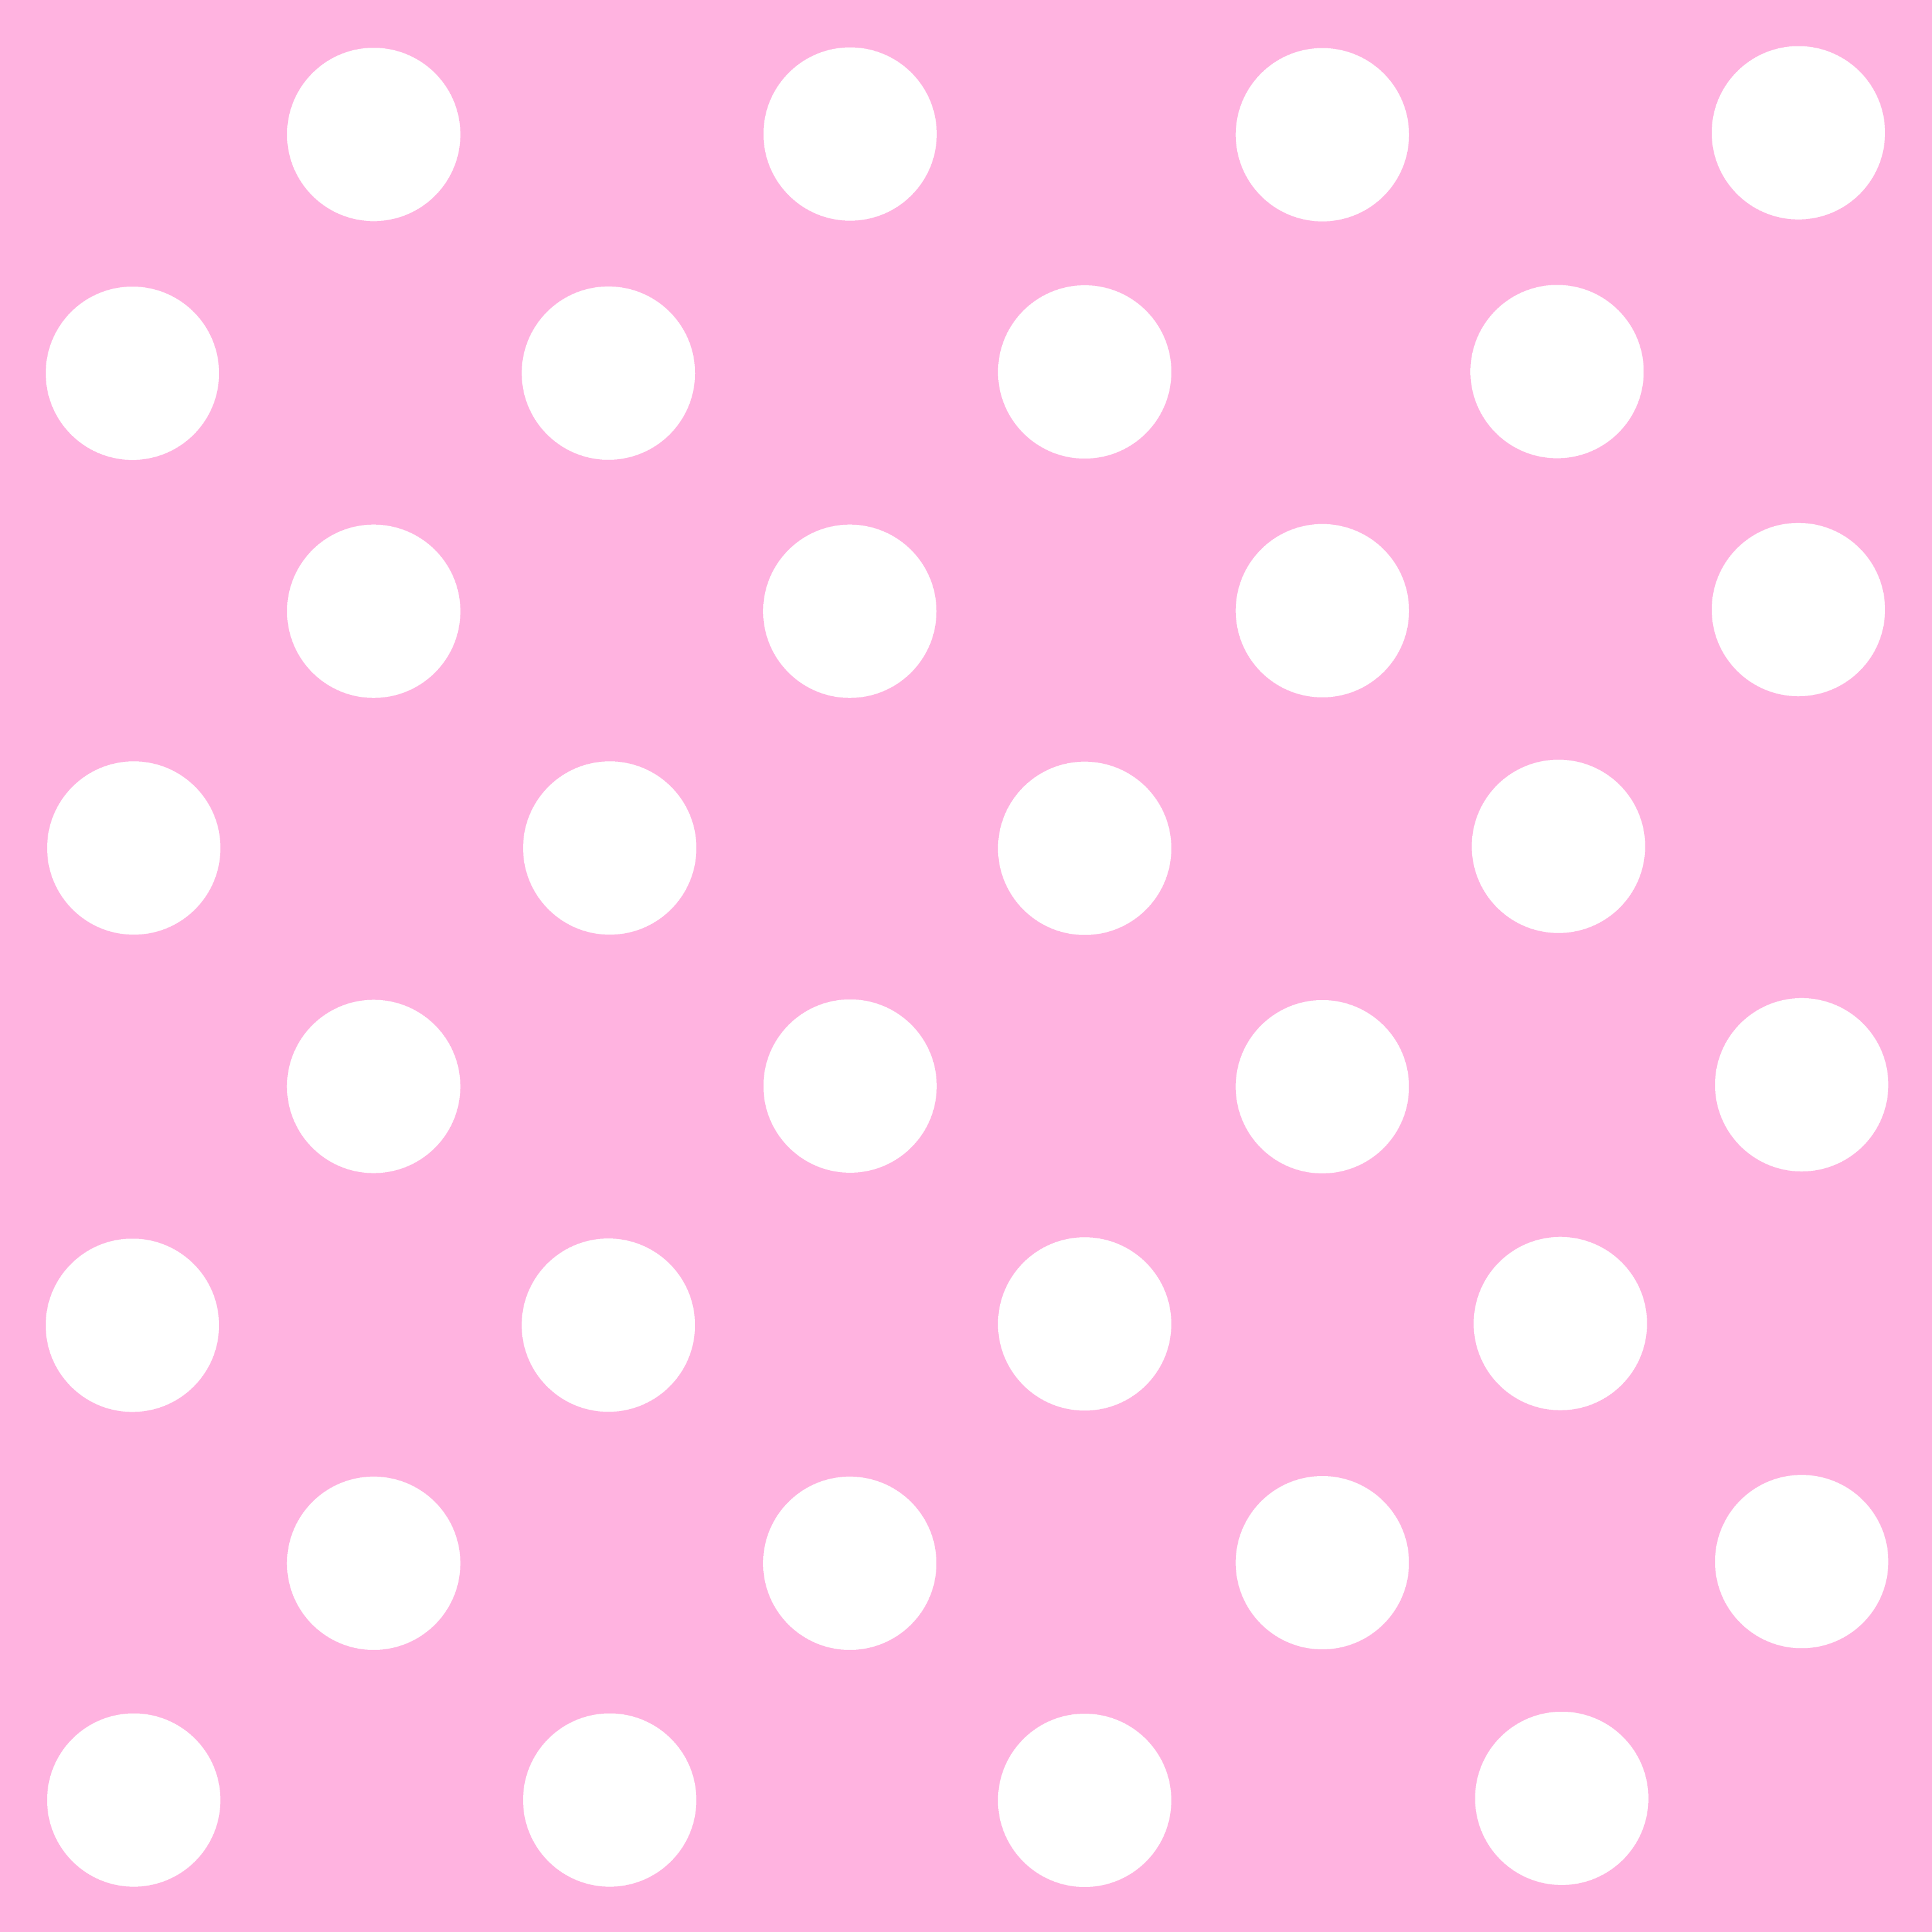 free black and white polka dot clip art - photo #47